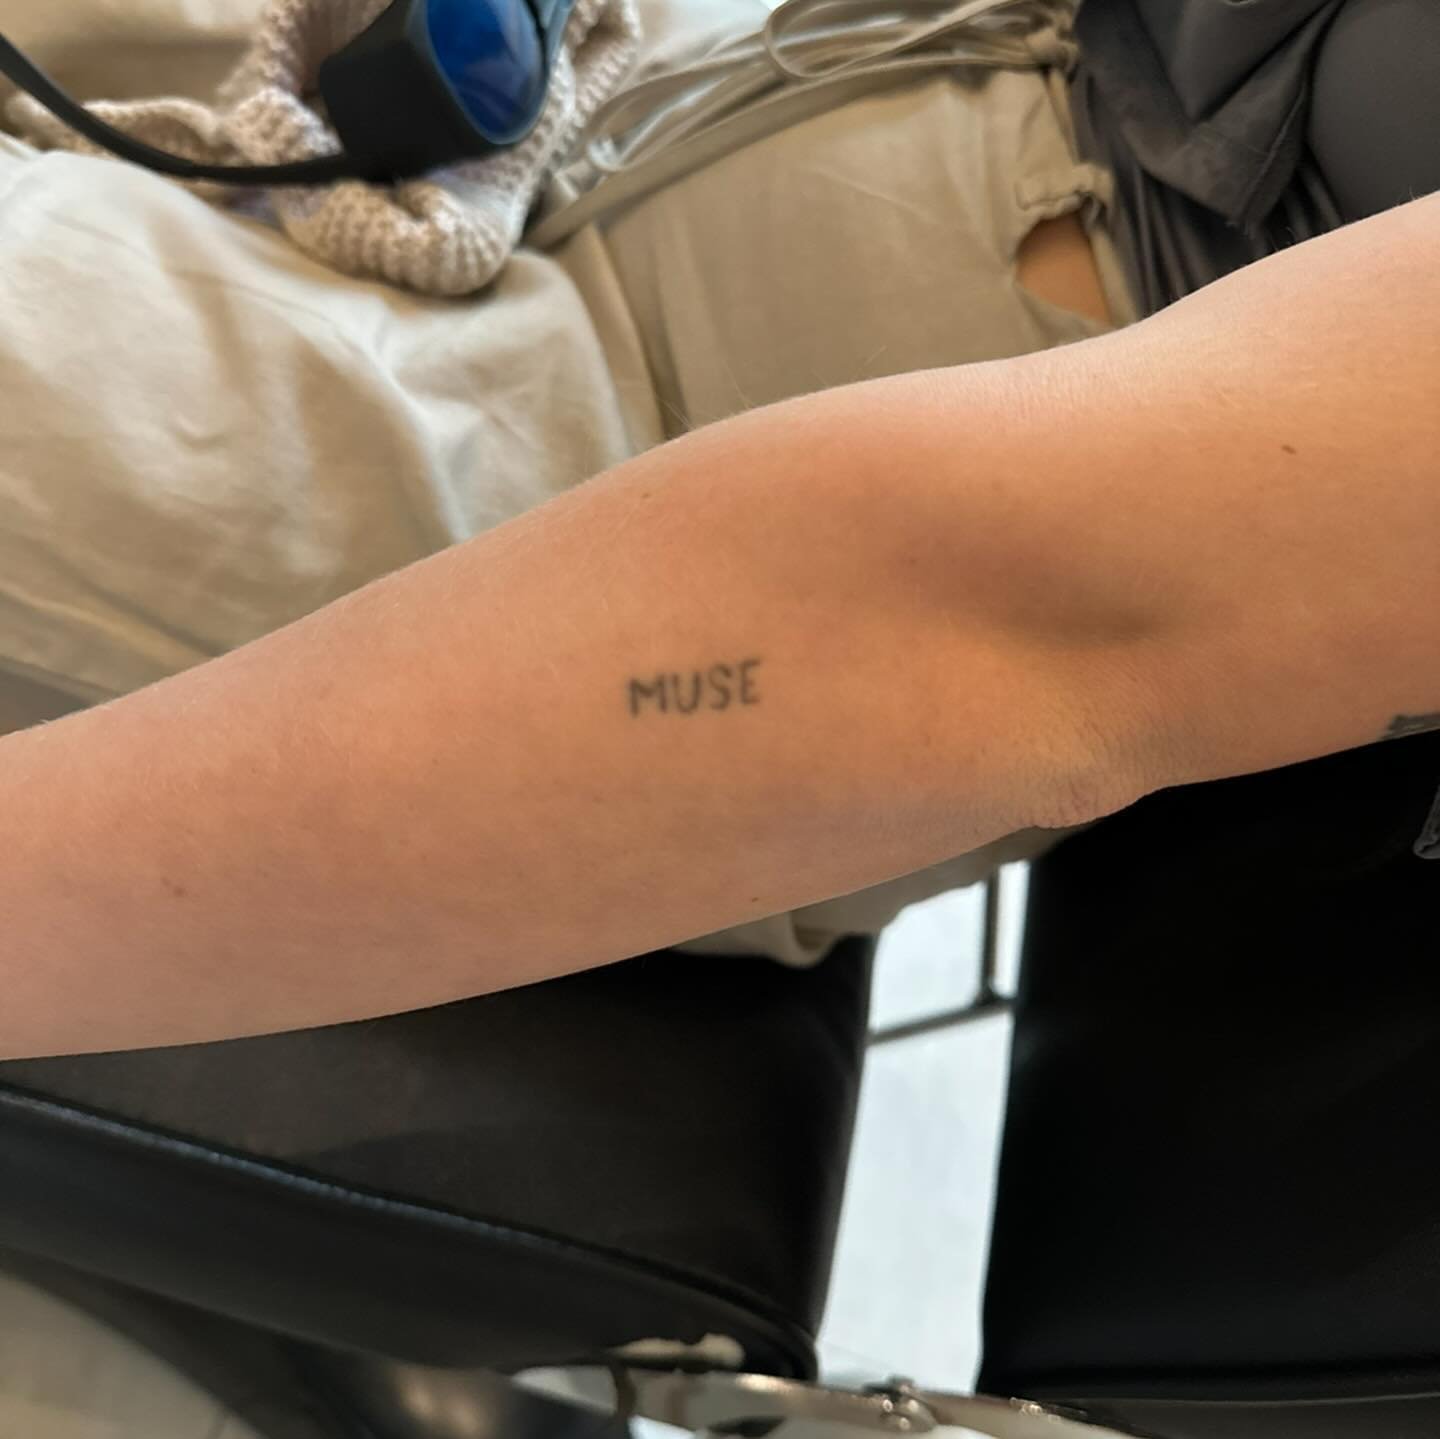 Tatoveringsfjernelse med PicoPlus hos NUDE! 💥

F&aelig;rdig! Sally-Marie har i alt gennemg&aring;et 4 behandlinger af sin tatovering p&aring; armen. I dag gav vi hende sidste behandling for at komme helt i m&aring;l. Vi har som udgangspunkt givet 6-